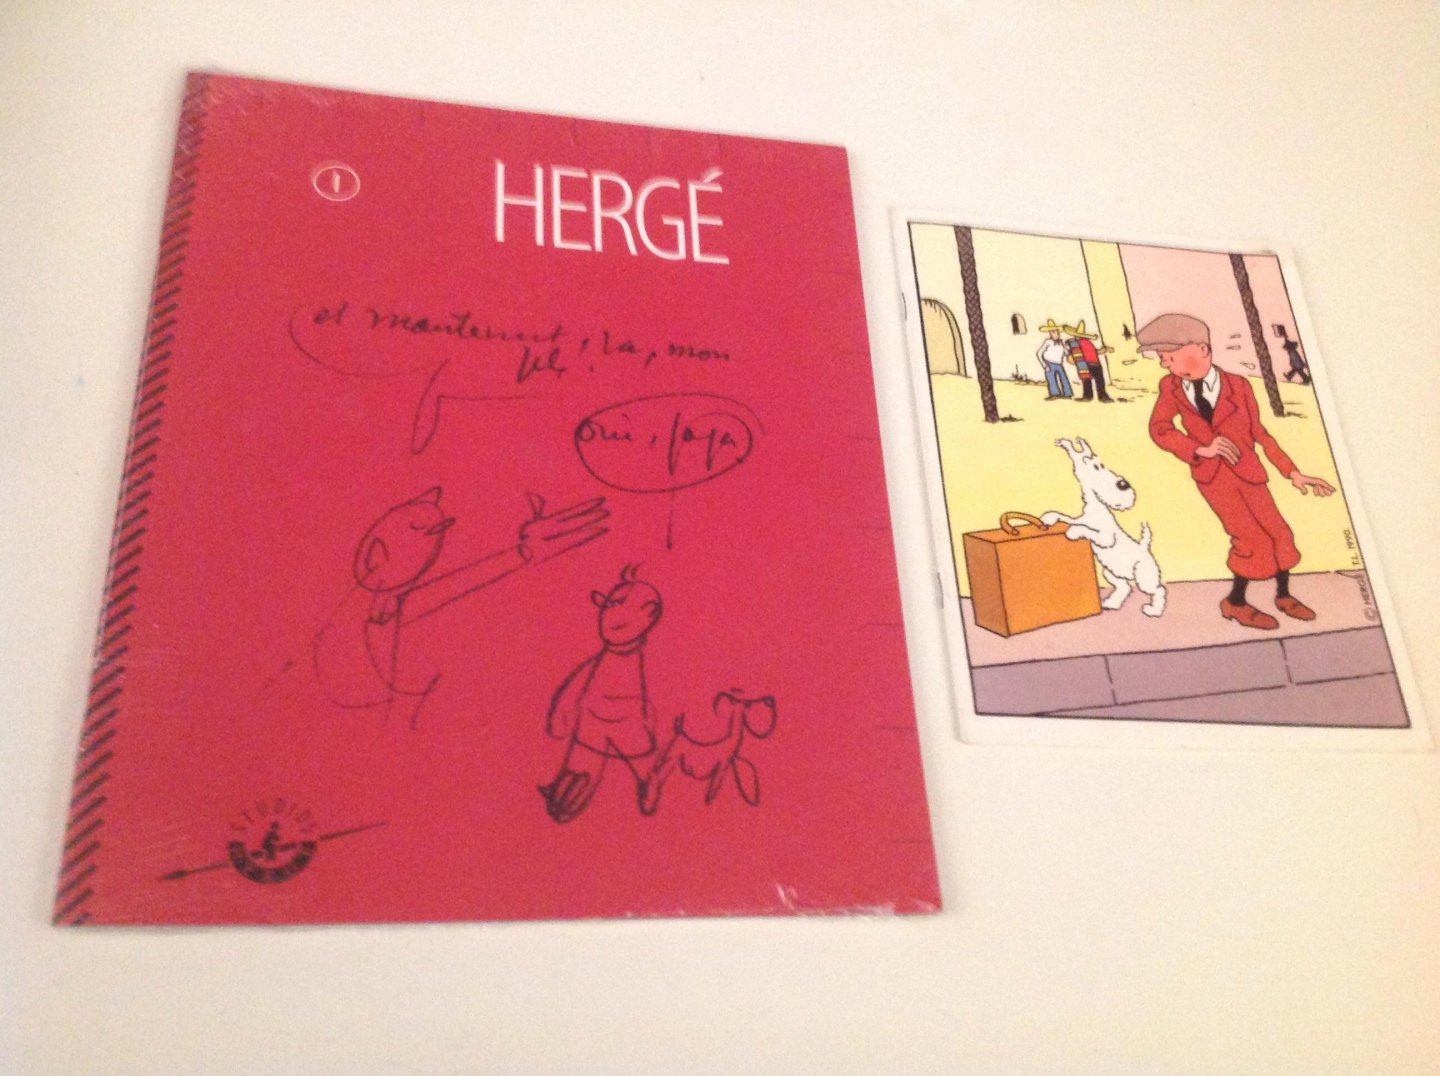 Studio's Hergé - Hergé cahier numéro 1 met dvd. En extraatje